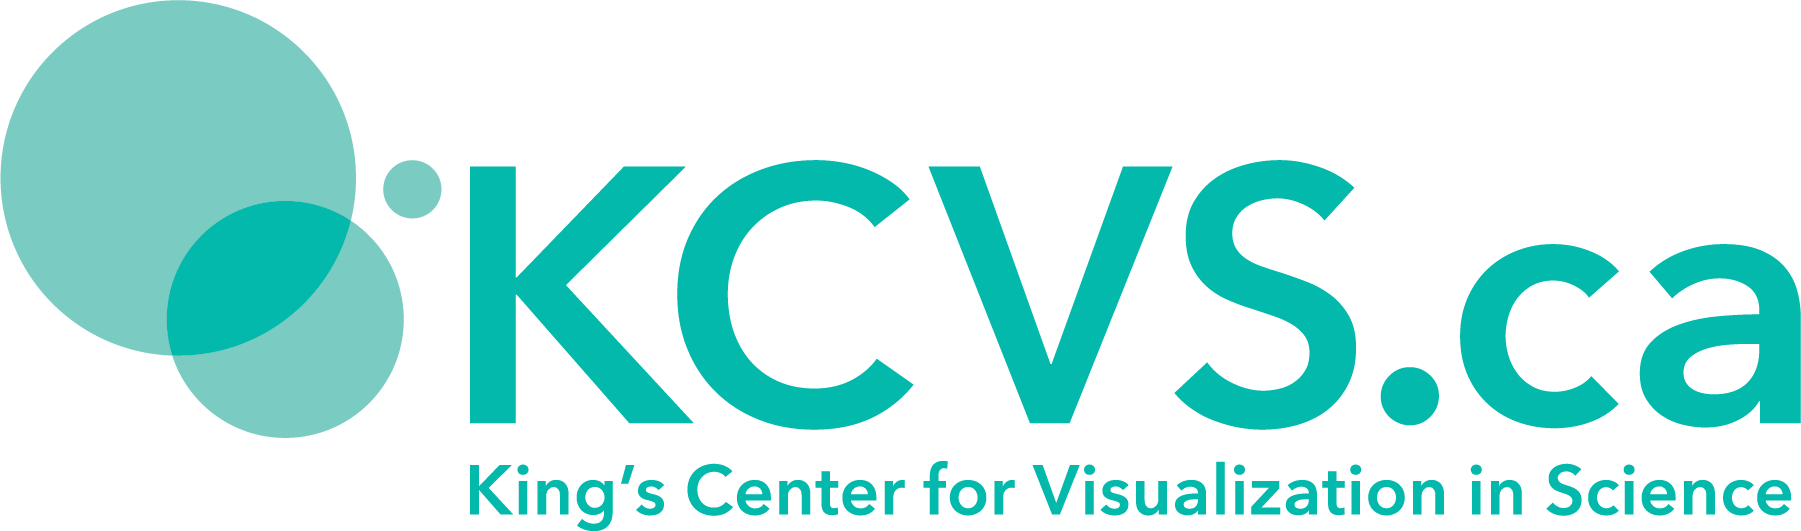 KCVS.ca